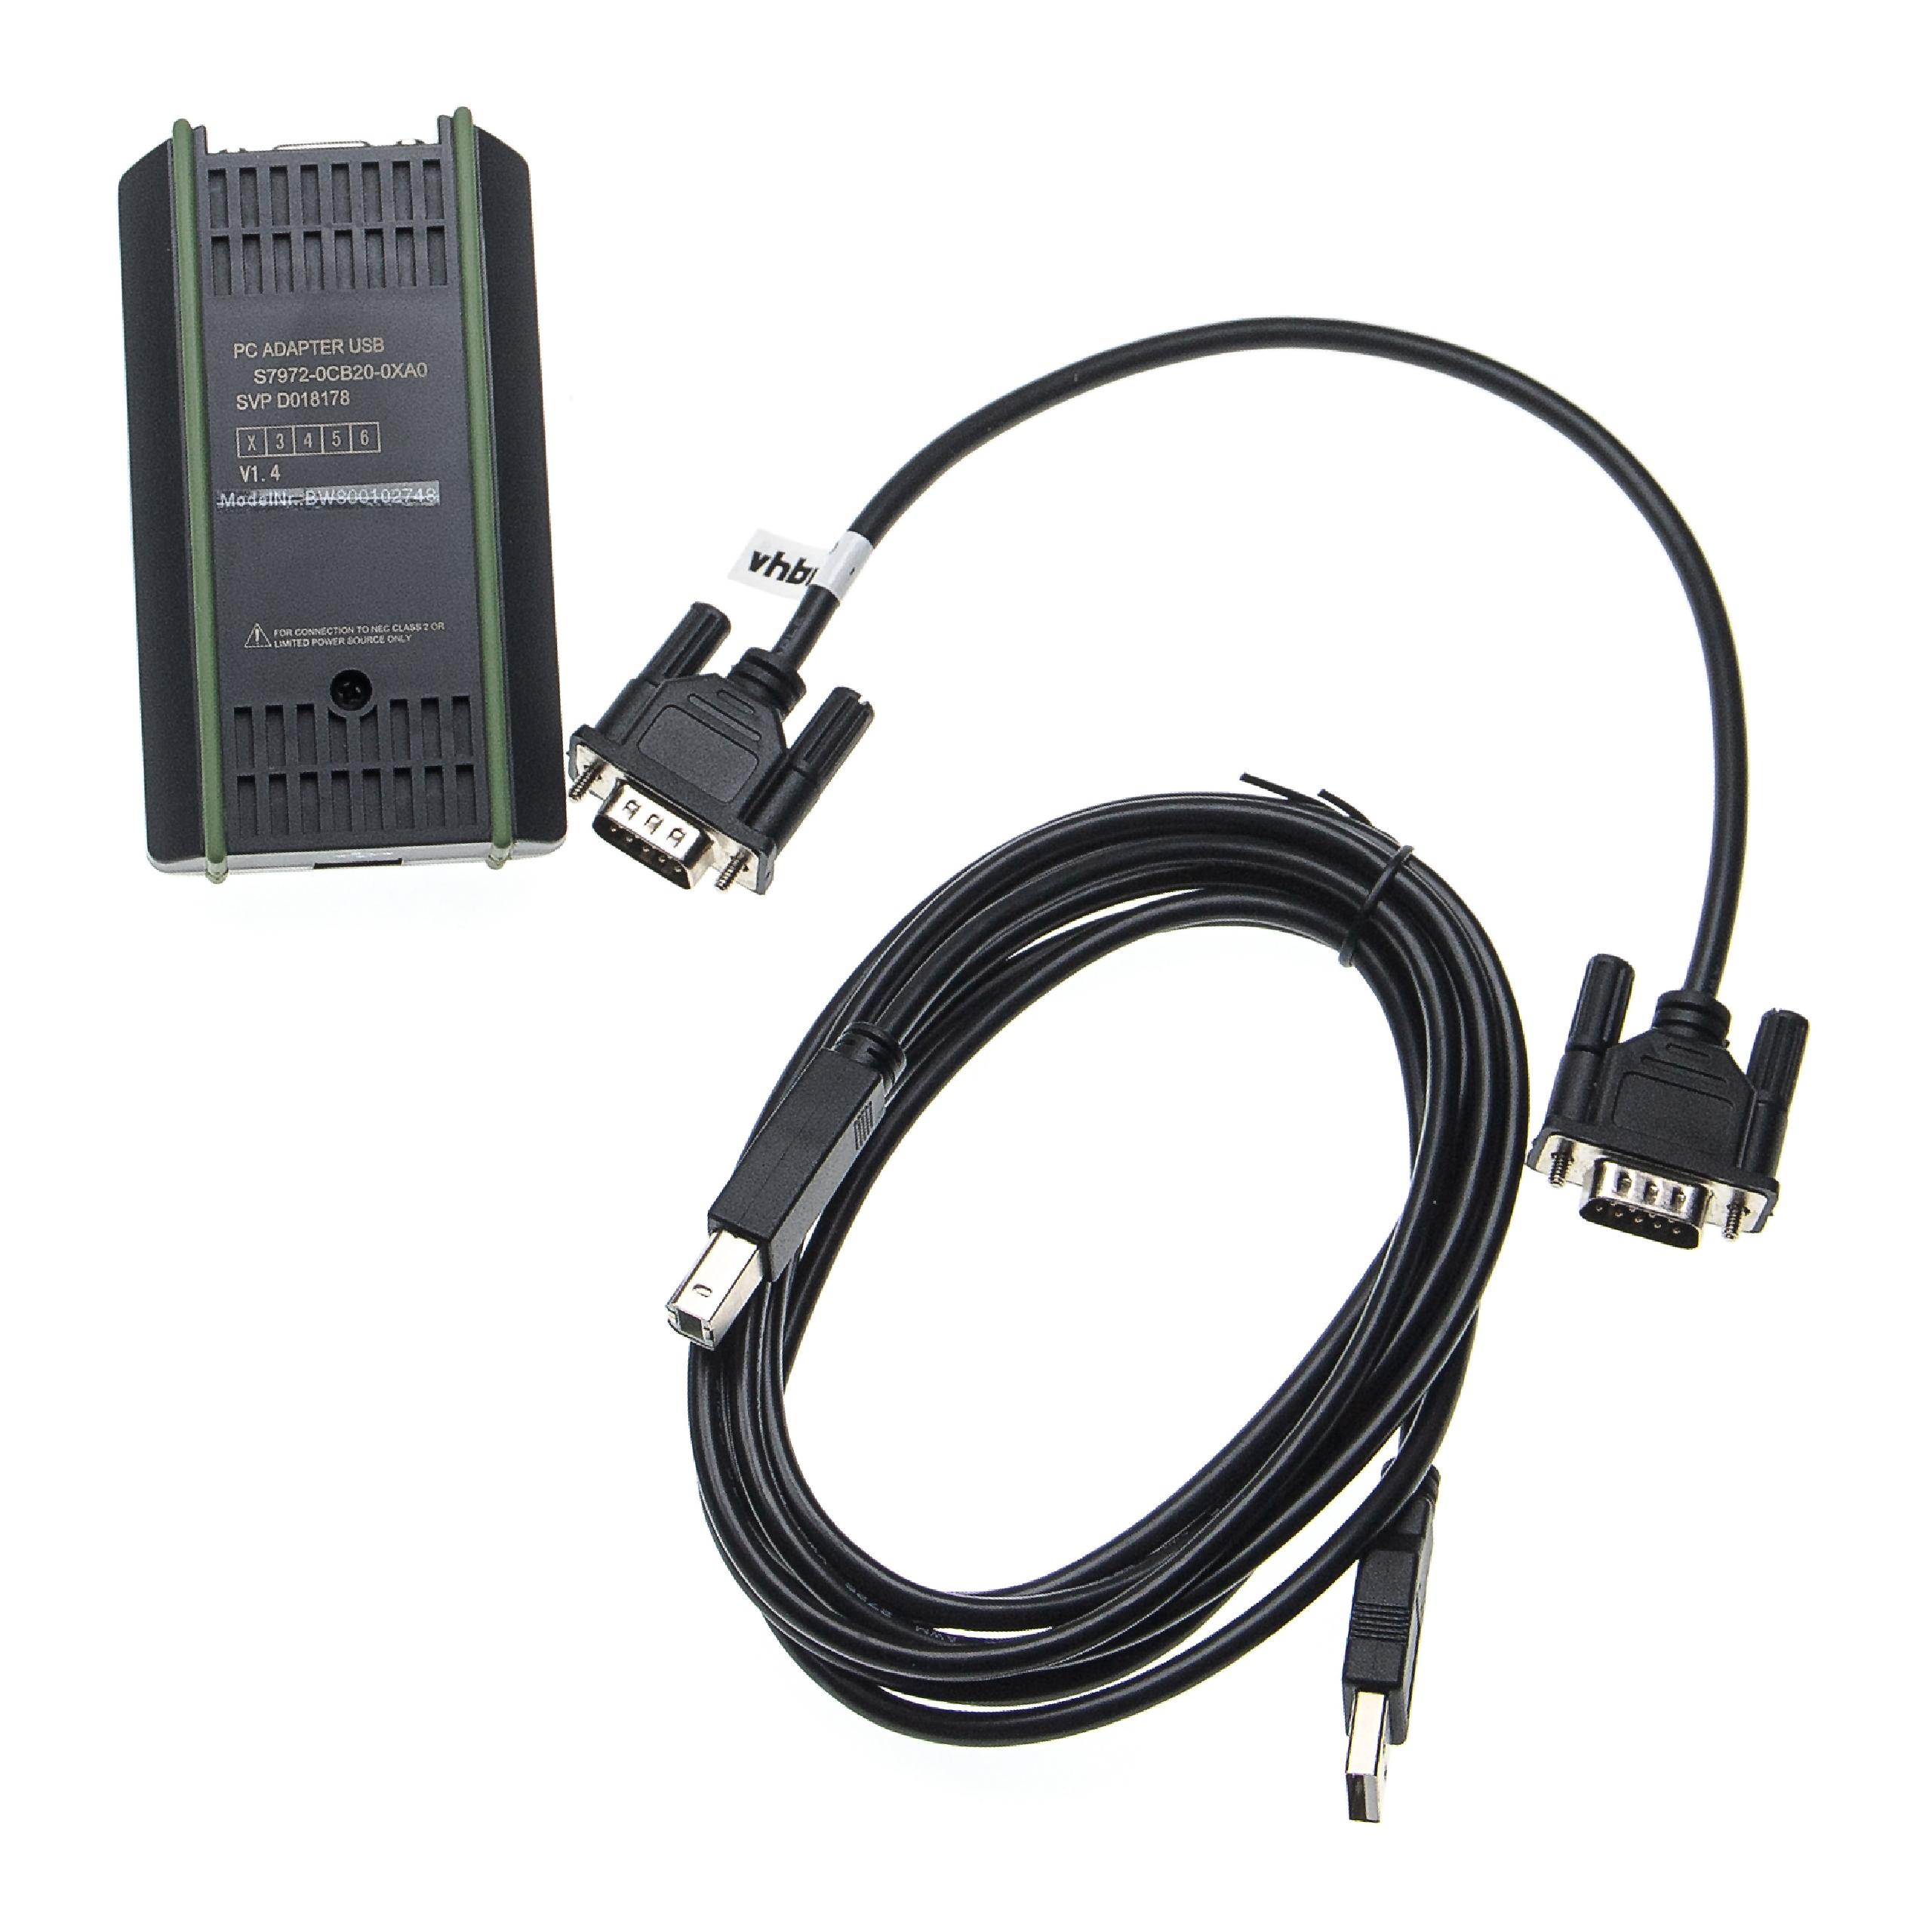 Câble de programmation PLC, MPI remplace Siemens 6ES7 972-0CB20-0XA0 pour radio